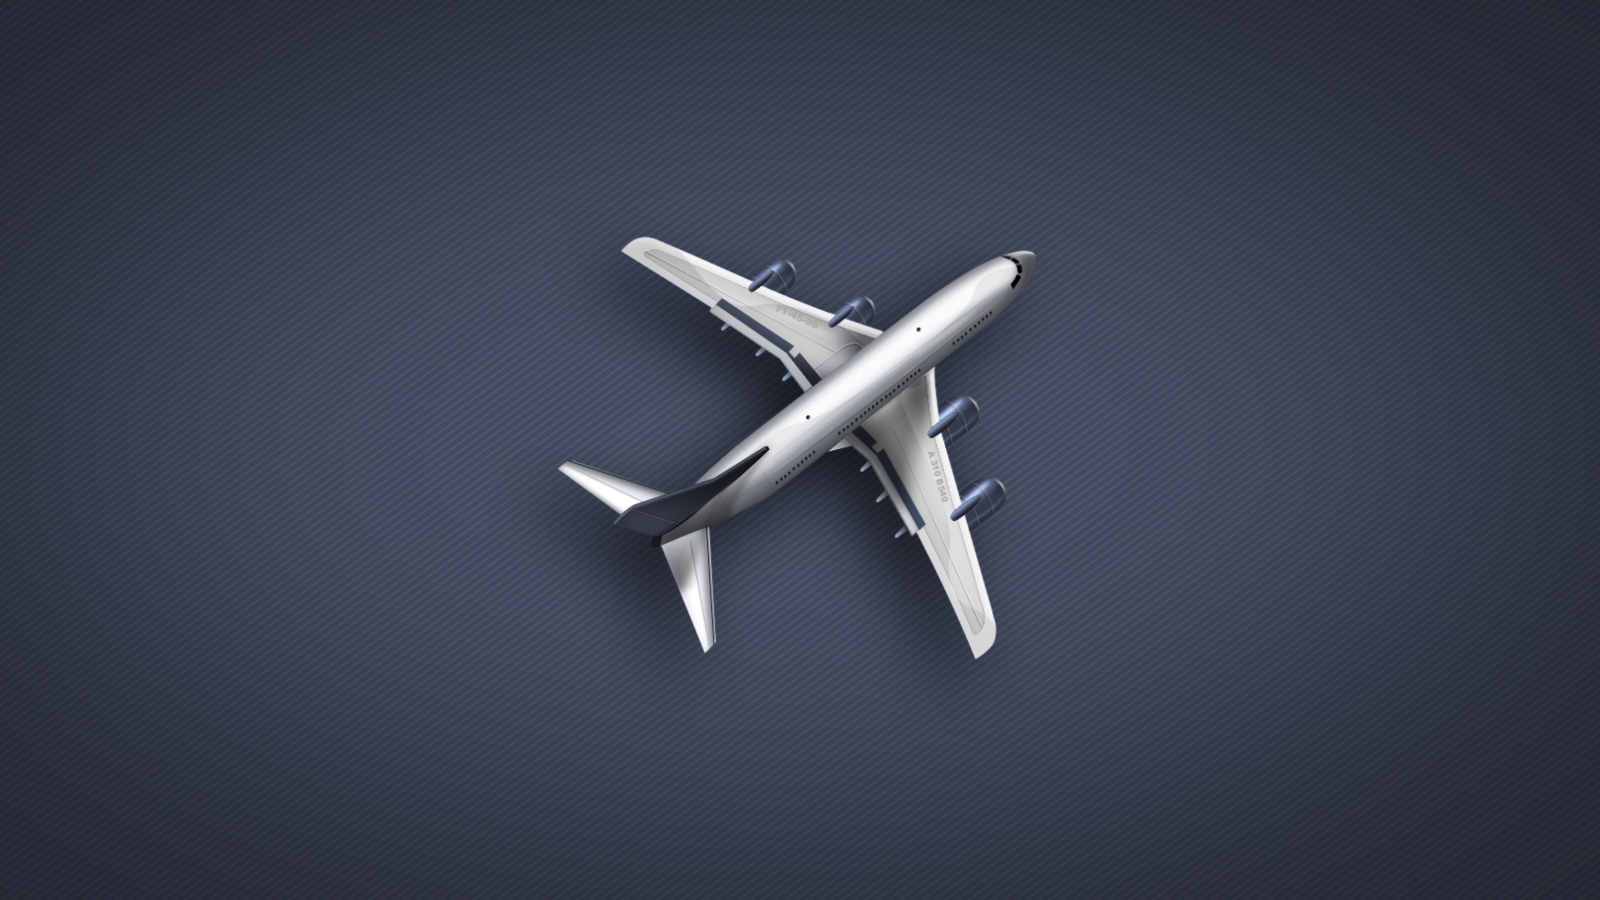 Boeing Aircraft wallpaper 1600x900